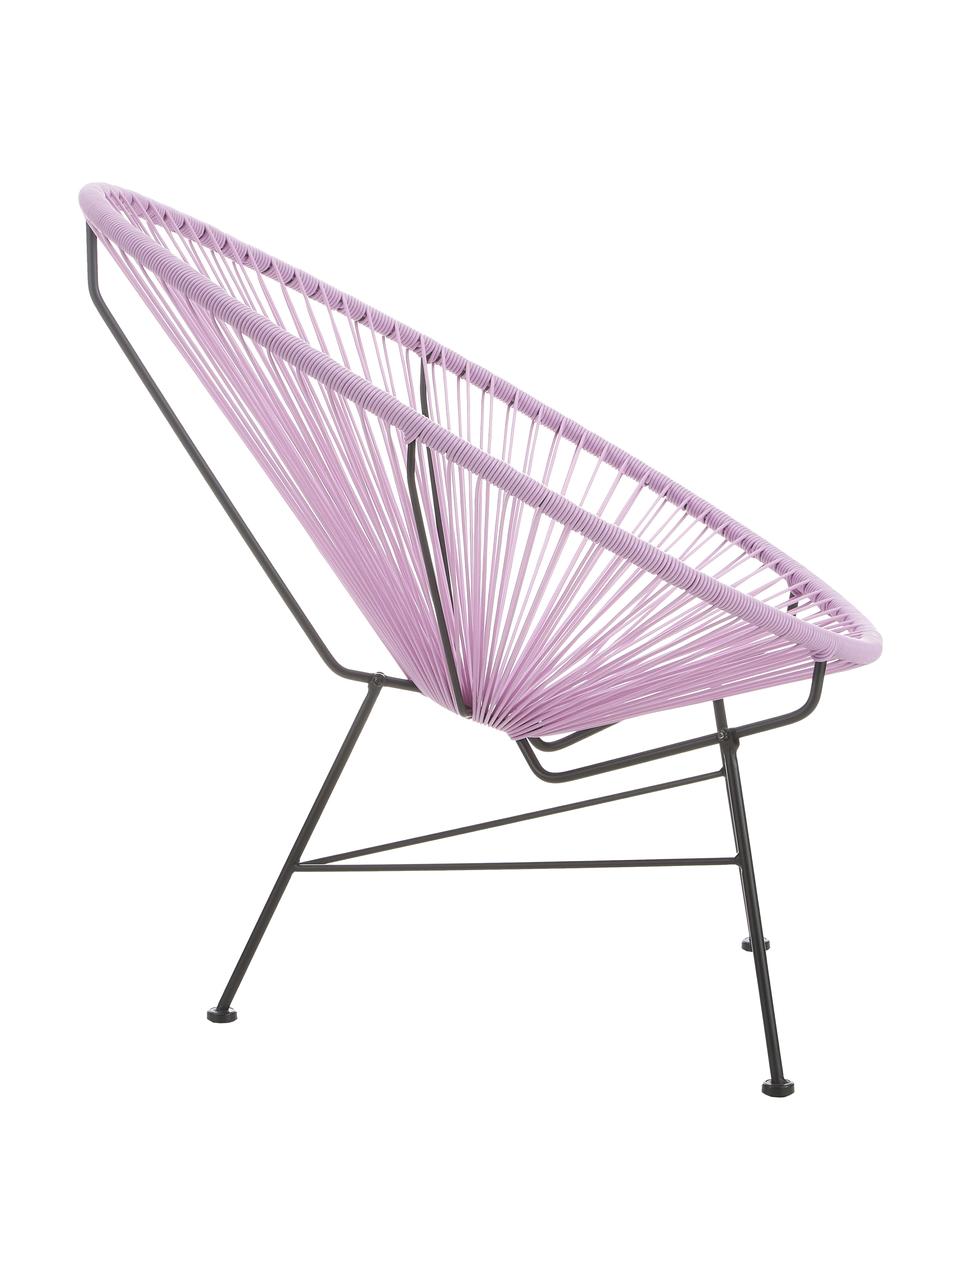 Loungesessel Bahia aus Kunststoff-Geflecht, Sitzfläche: Kunststoff, Gestell: Metall, pulverbeschichtet, Lavendel, B 81 x T 73 cm